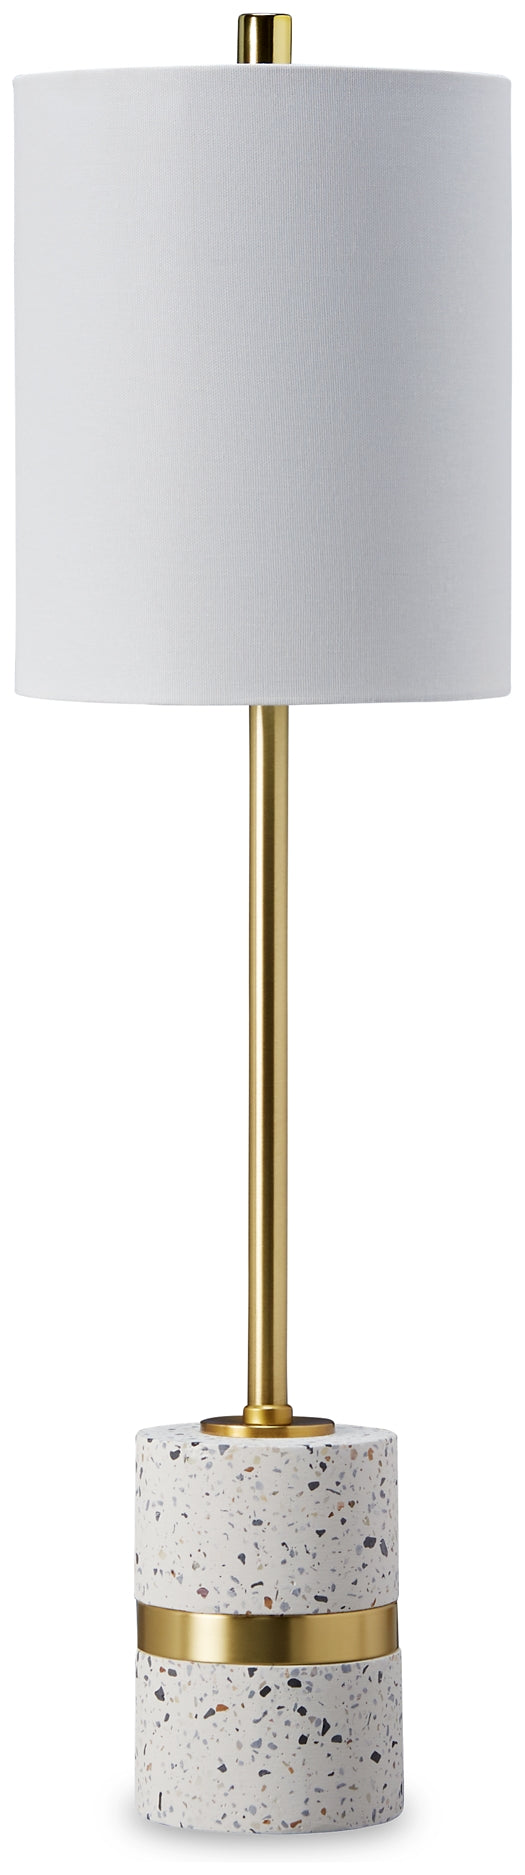 Maywick Metal Table Lamp (1/CN) JB's Furniture  Home Furniture, Home Decor, Furniture Store